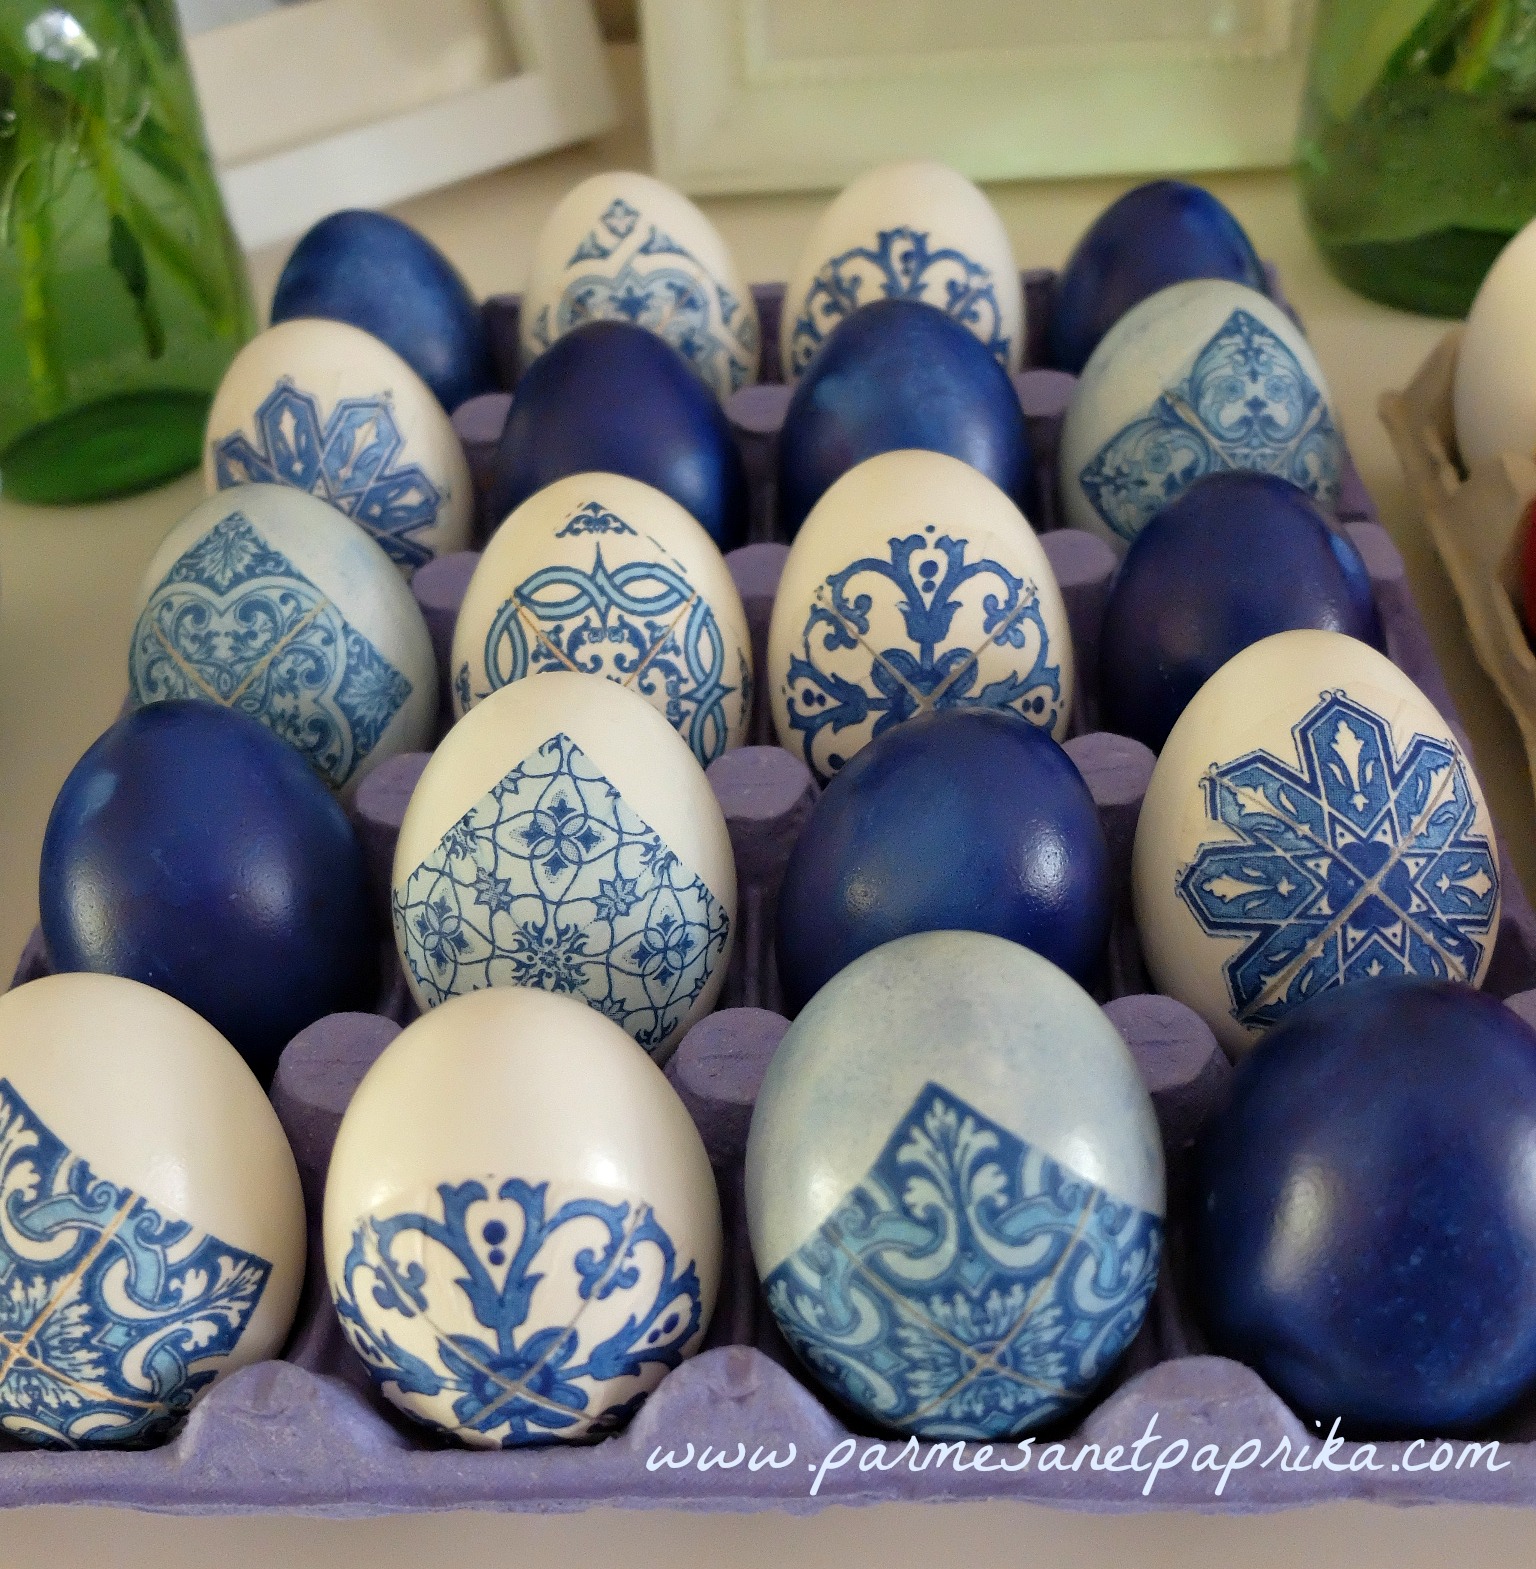 Comment colorer des œufs de Pâques par trempage